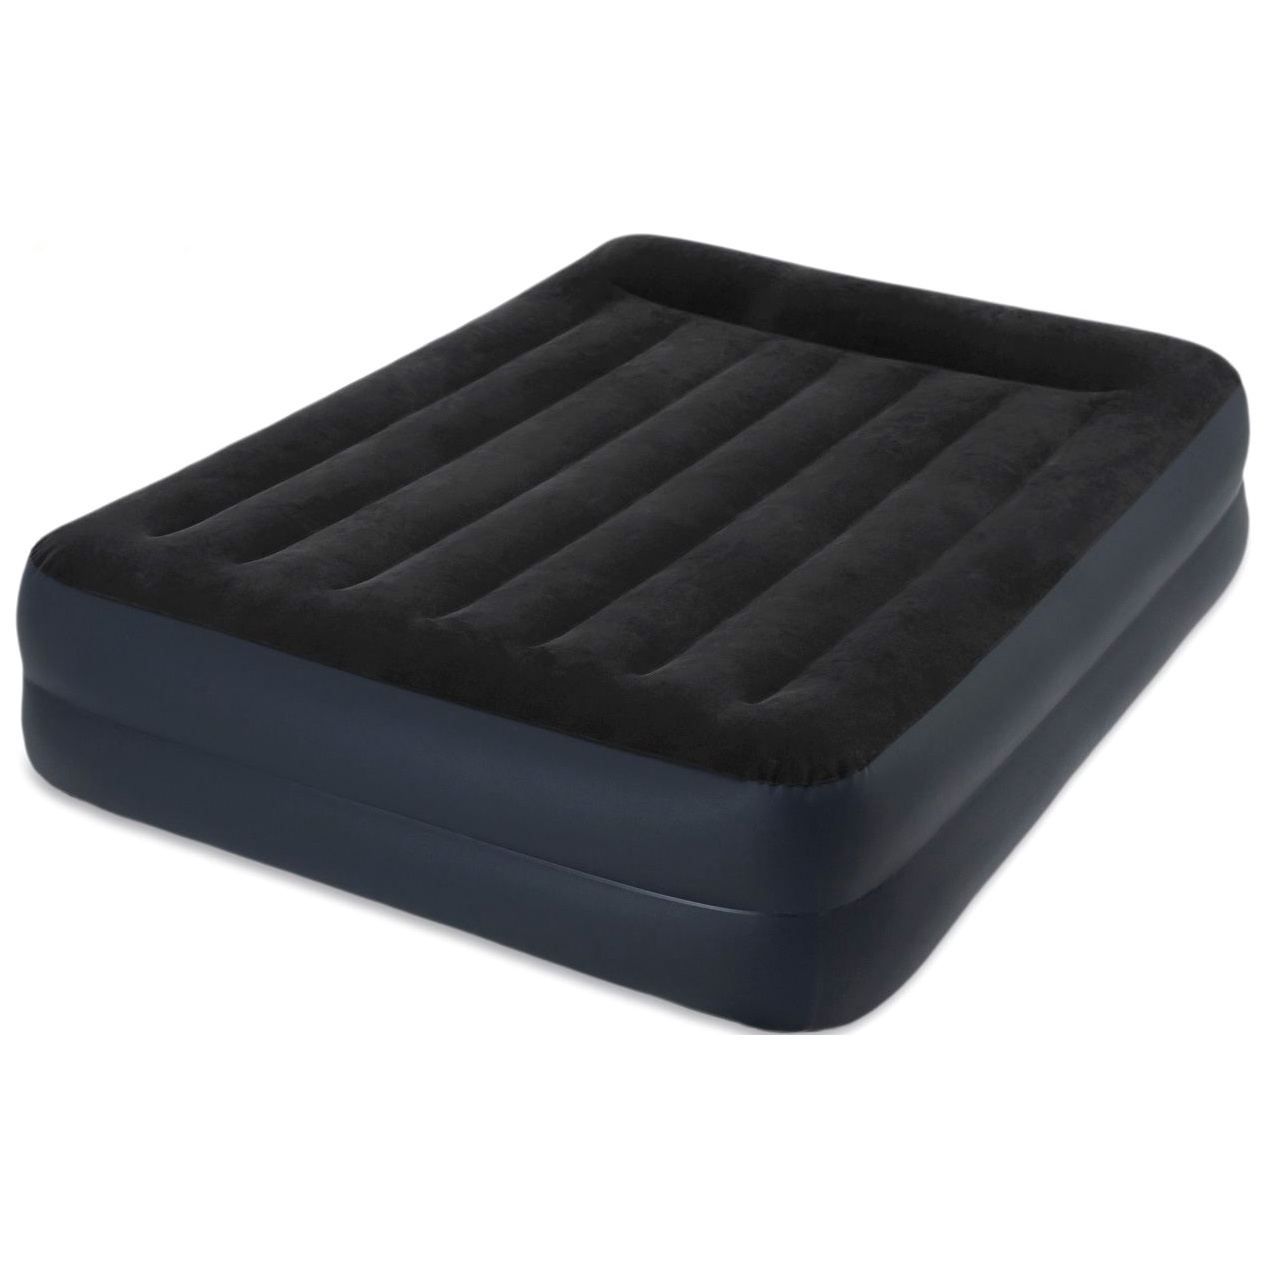 Двуспальная надувная кровать Pillow rest Bed Fiber-Tech, Intex - 64124